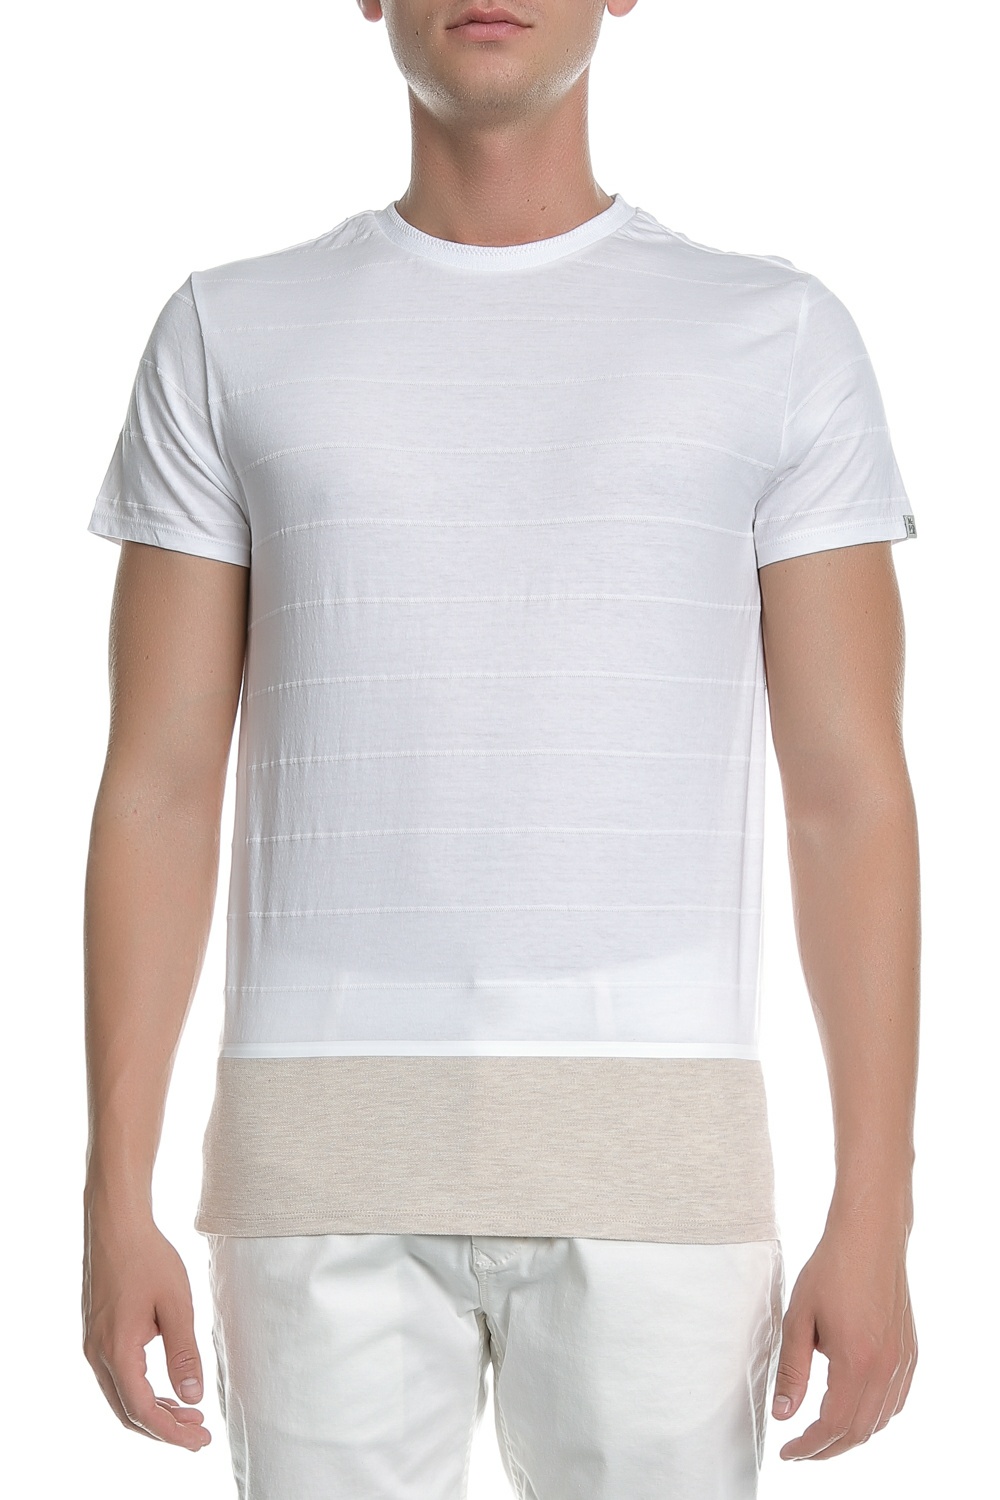 Ανδρικά/Ρούχα/Μπλούζες/Κοντομάνικες SCOTCH & SODA - Ανδρική κοντομάνικη μπλούζα Scotch & Soda λευκή - μπεζ